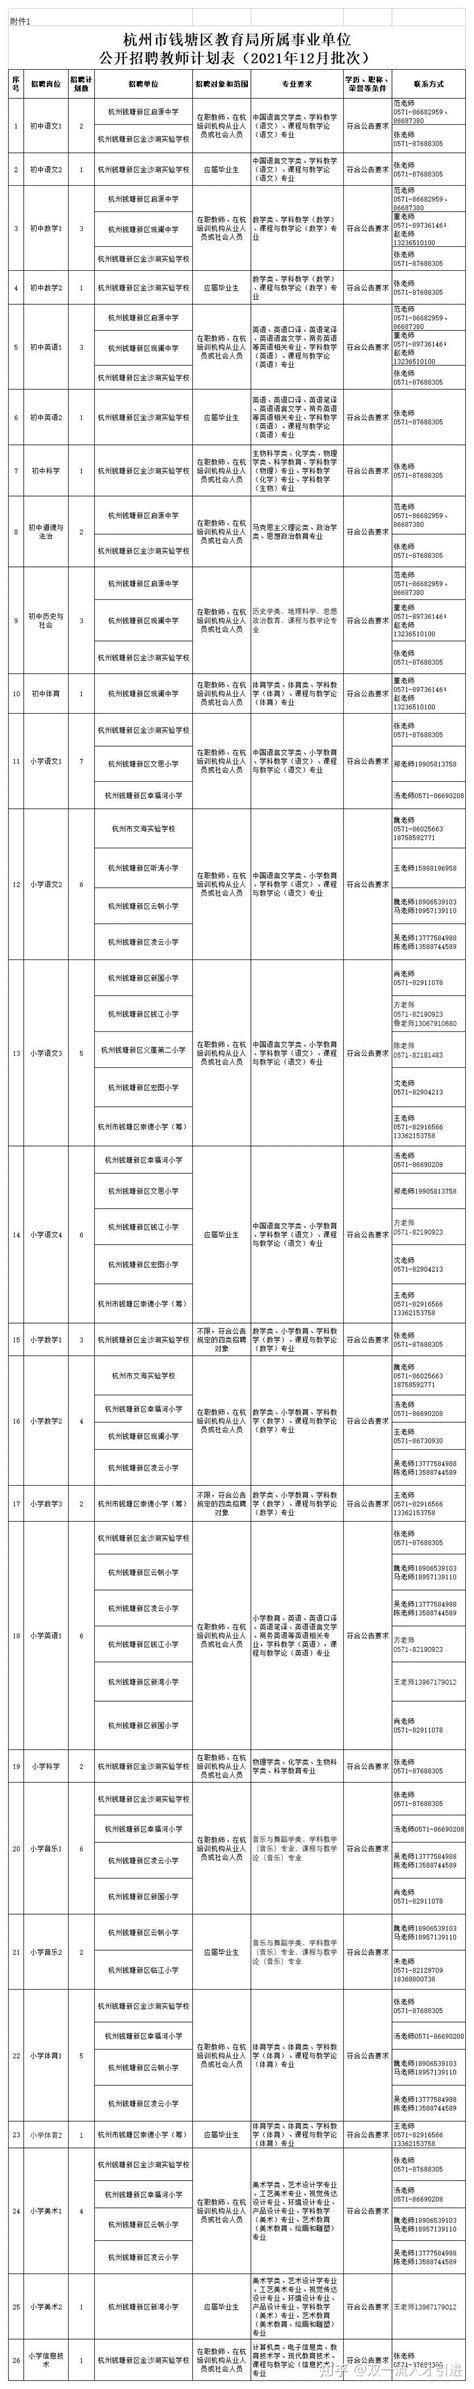 【浙江|杭州】杭州市钱塘区教育局所属事业单位公开招聘教师79名公告 - 知乎